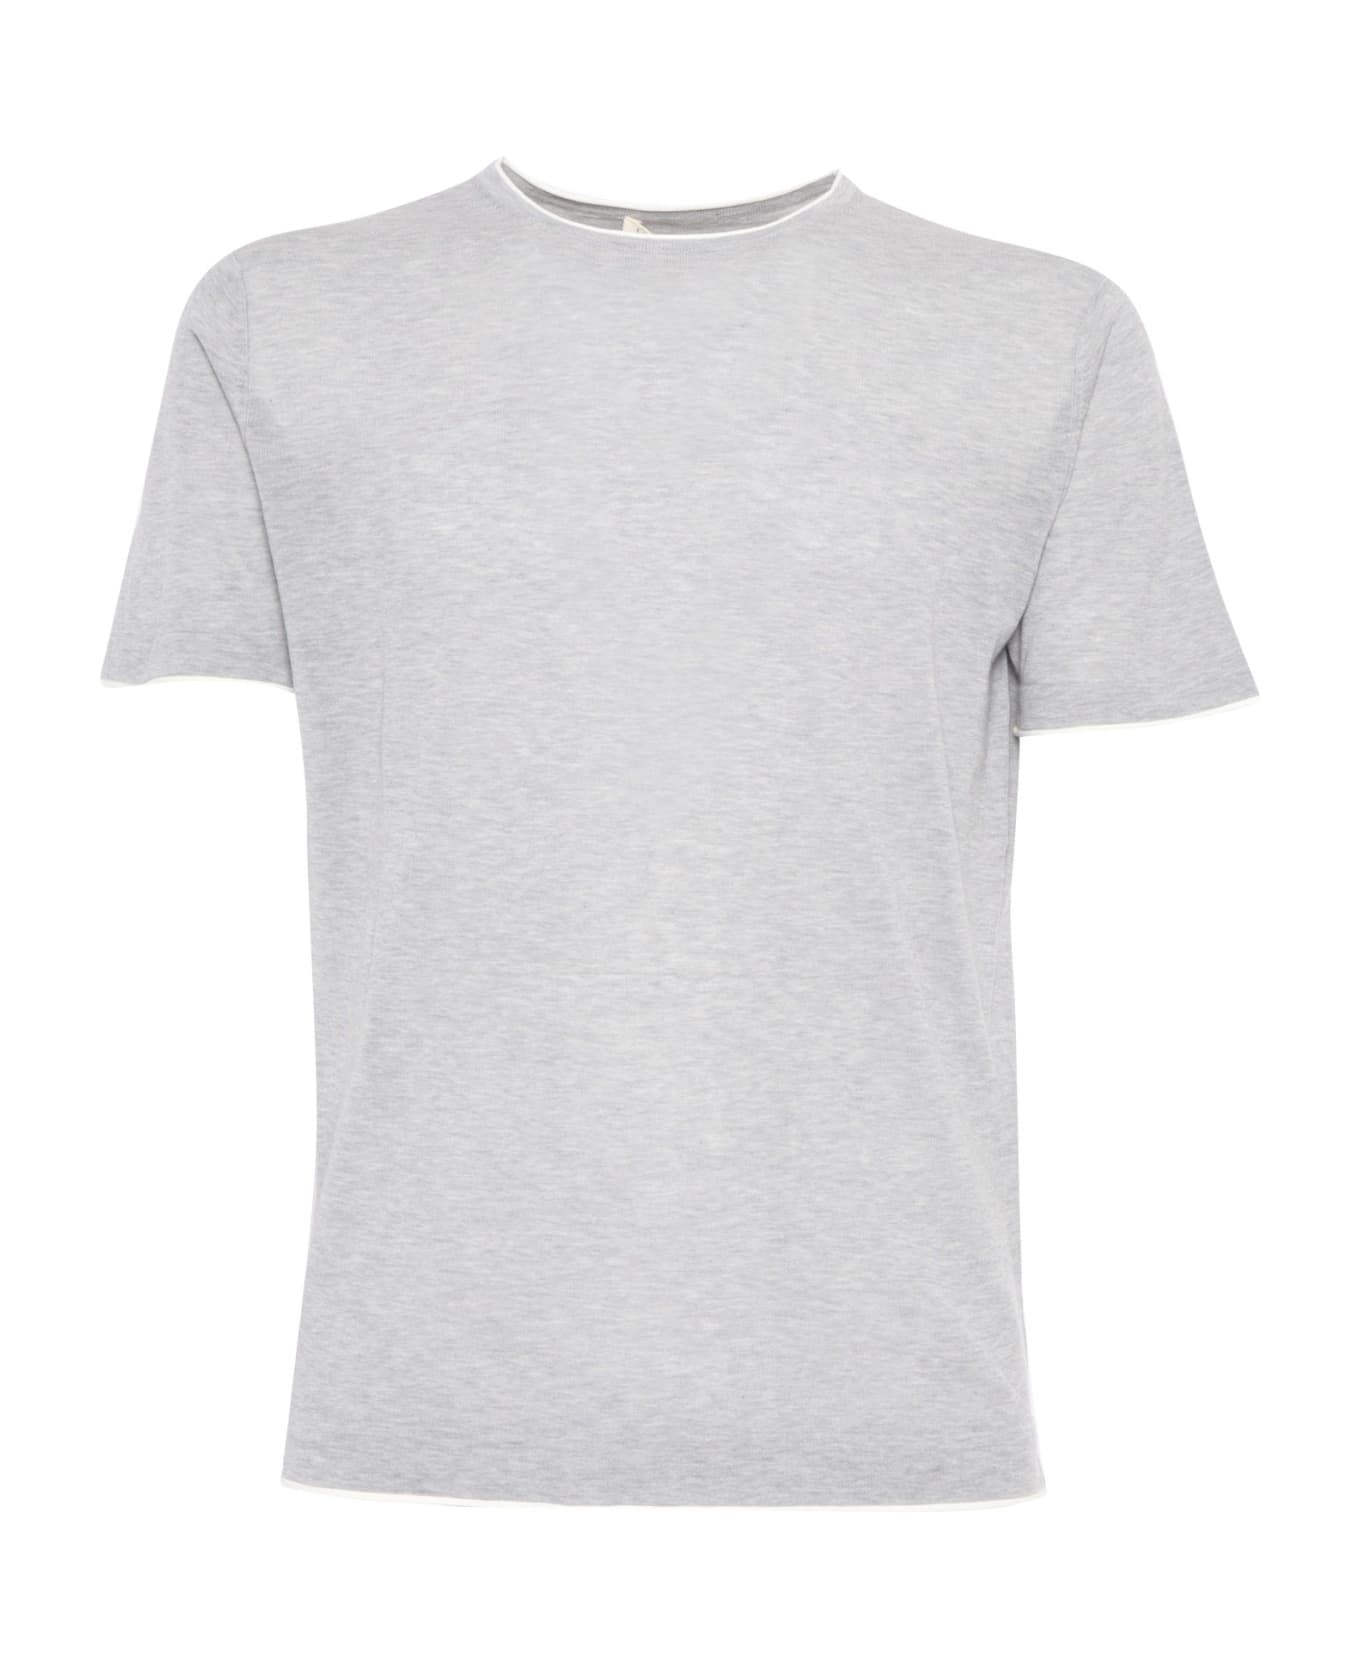 L.B.M. 1911 Gray Stretch Cotton T-shirt - GREY